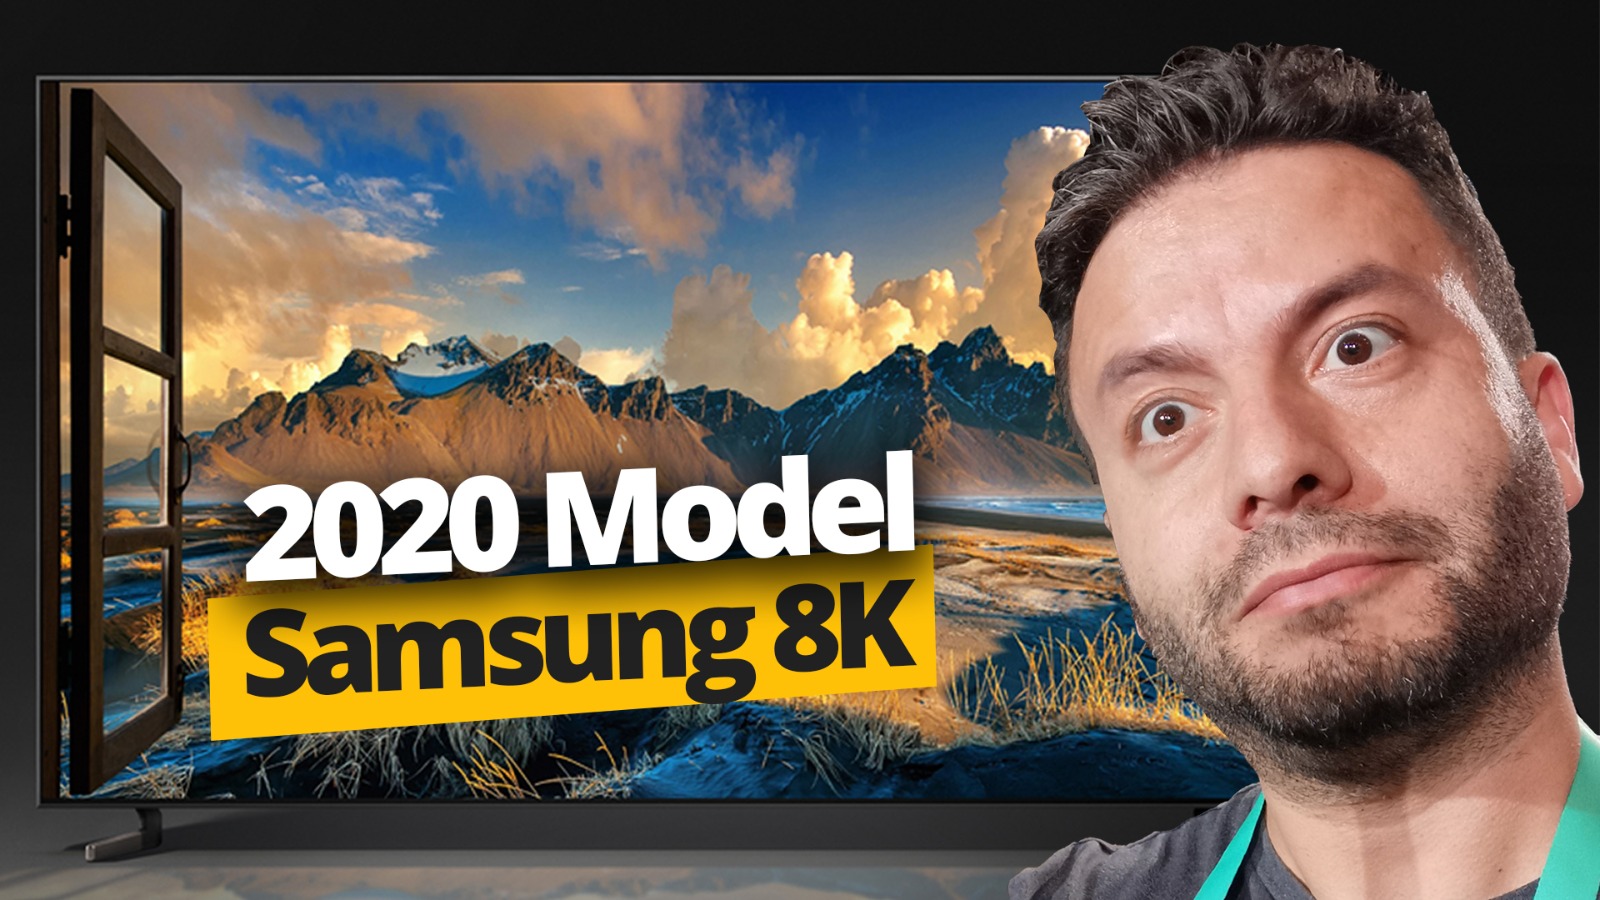 8K olmayanı 8K yapıyor! 2020 model Samsung 8K TV